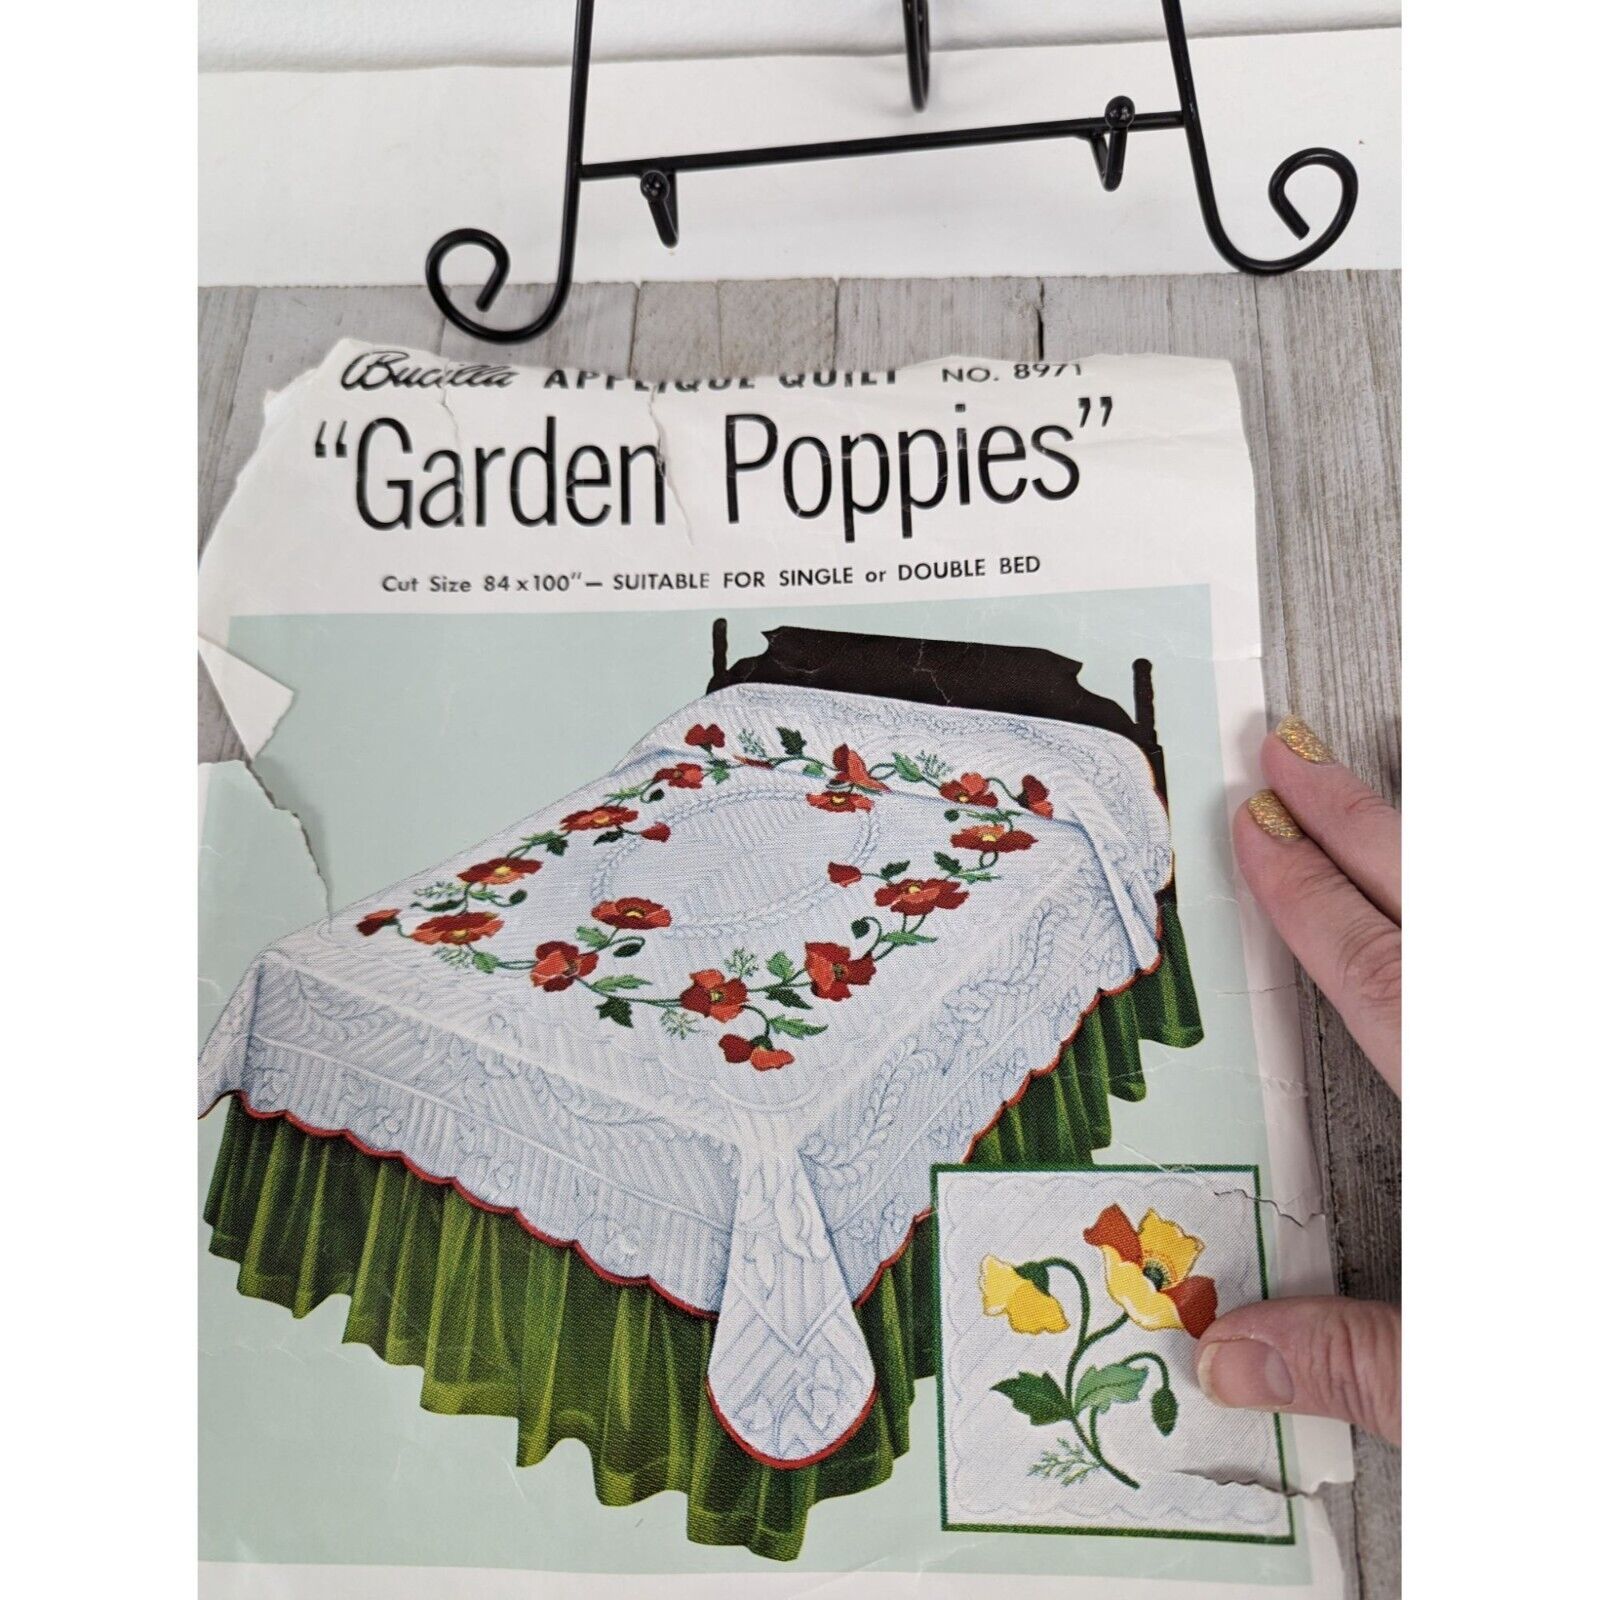 Vintage Bucilla Applique Quilt Kit #8971 Garden Red Poppies Bedspread 84x100 - $99.97